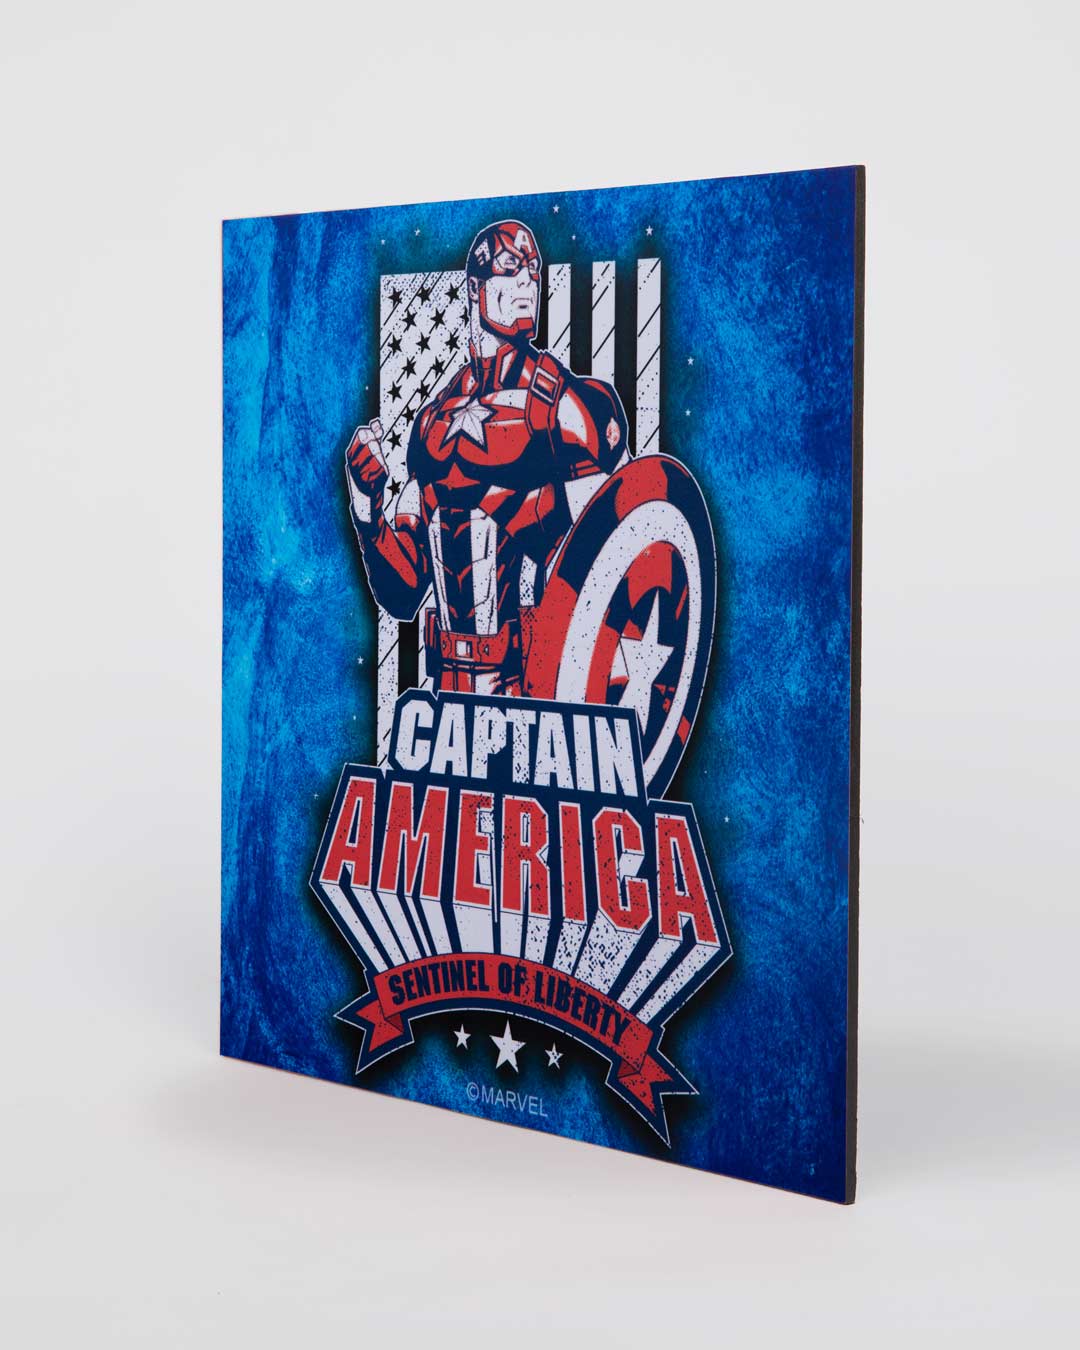 Shop Senitel Of Liberty (Marvel) Square Graphic Board - 12"x12" Multicolor-Back